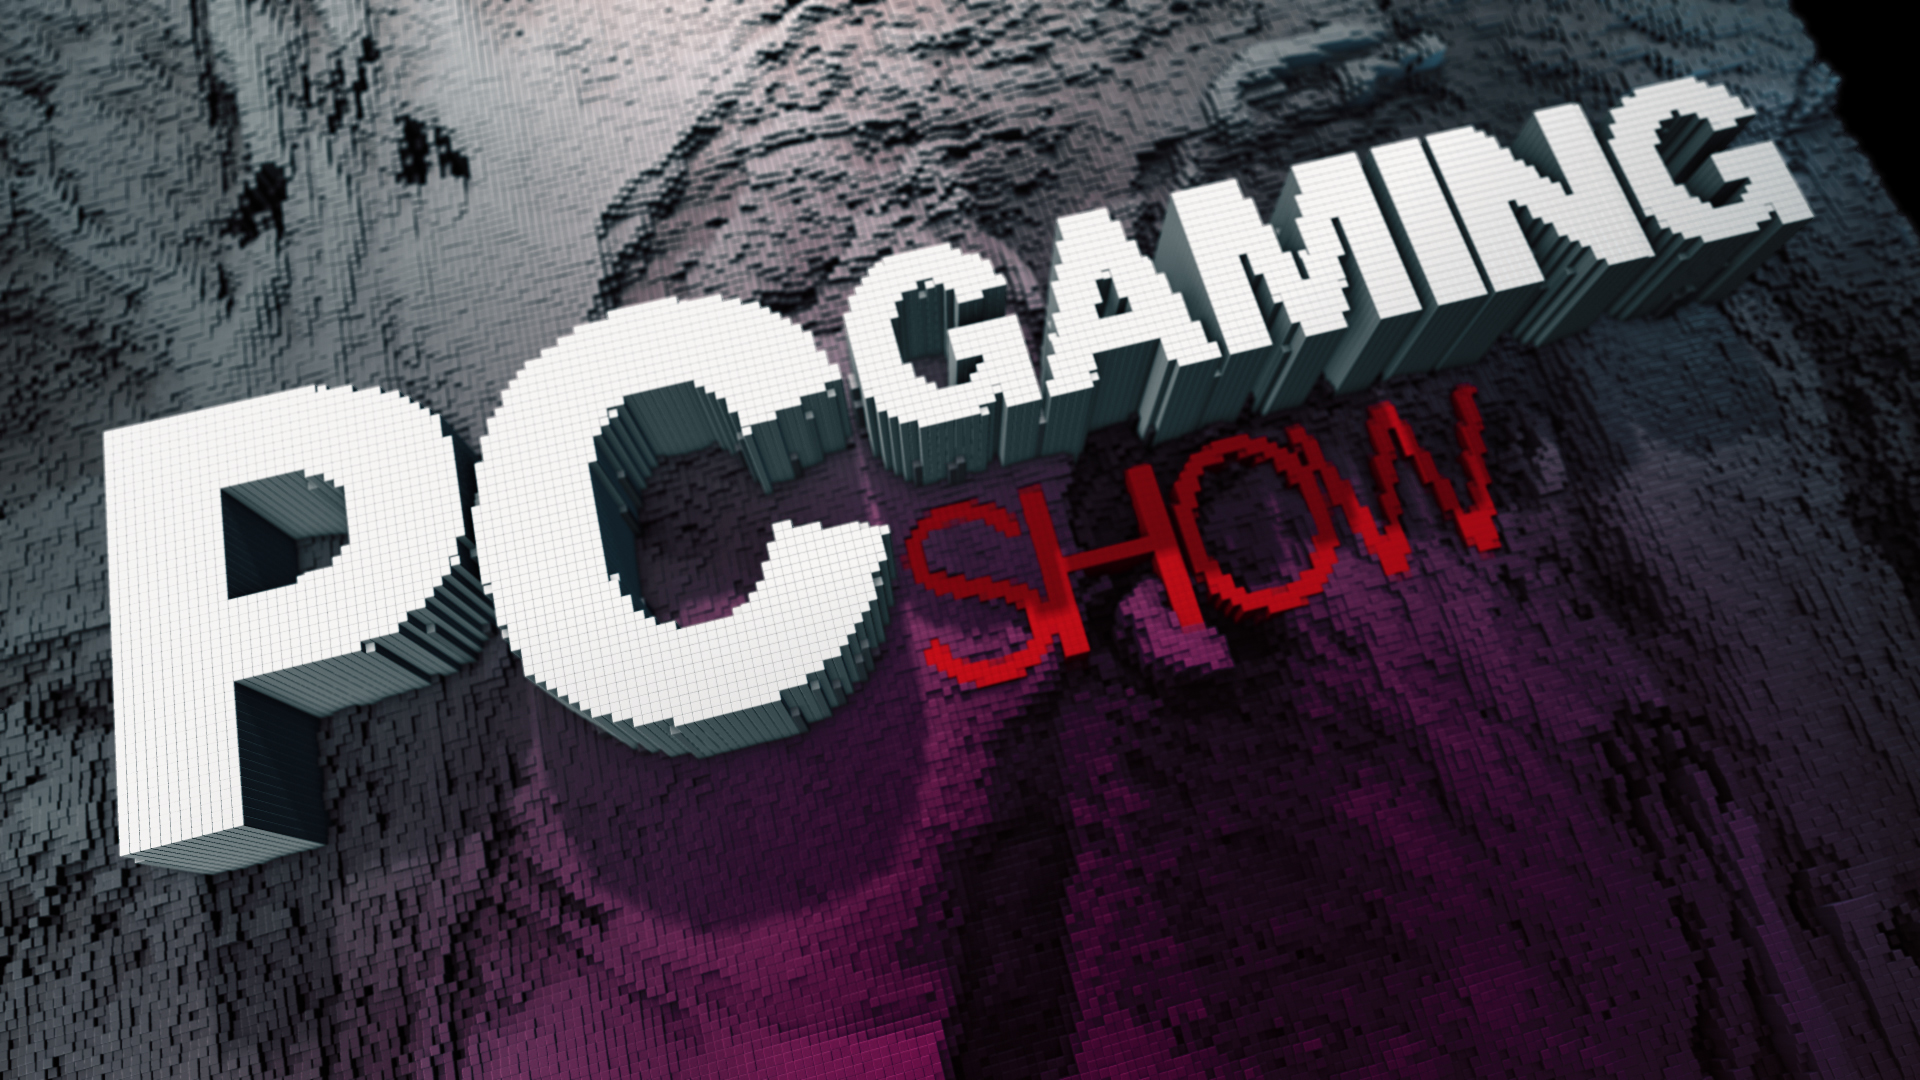 PC Gaming Show terá nova edição neste mês